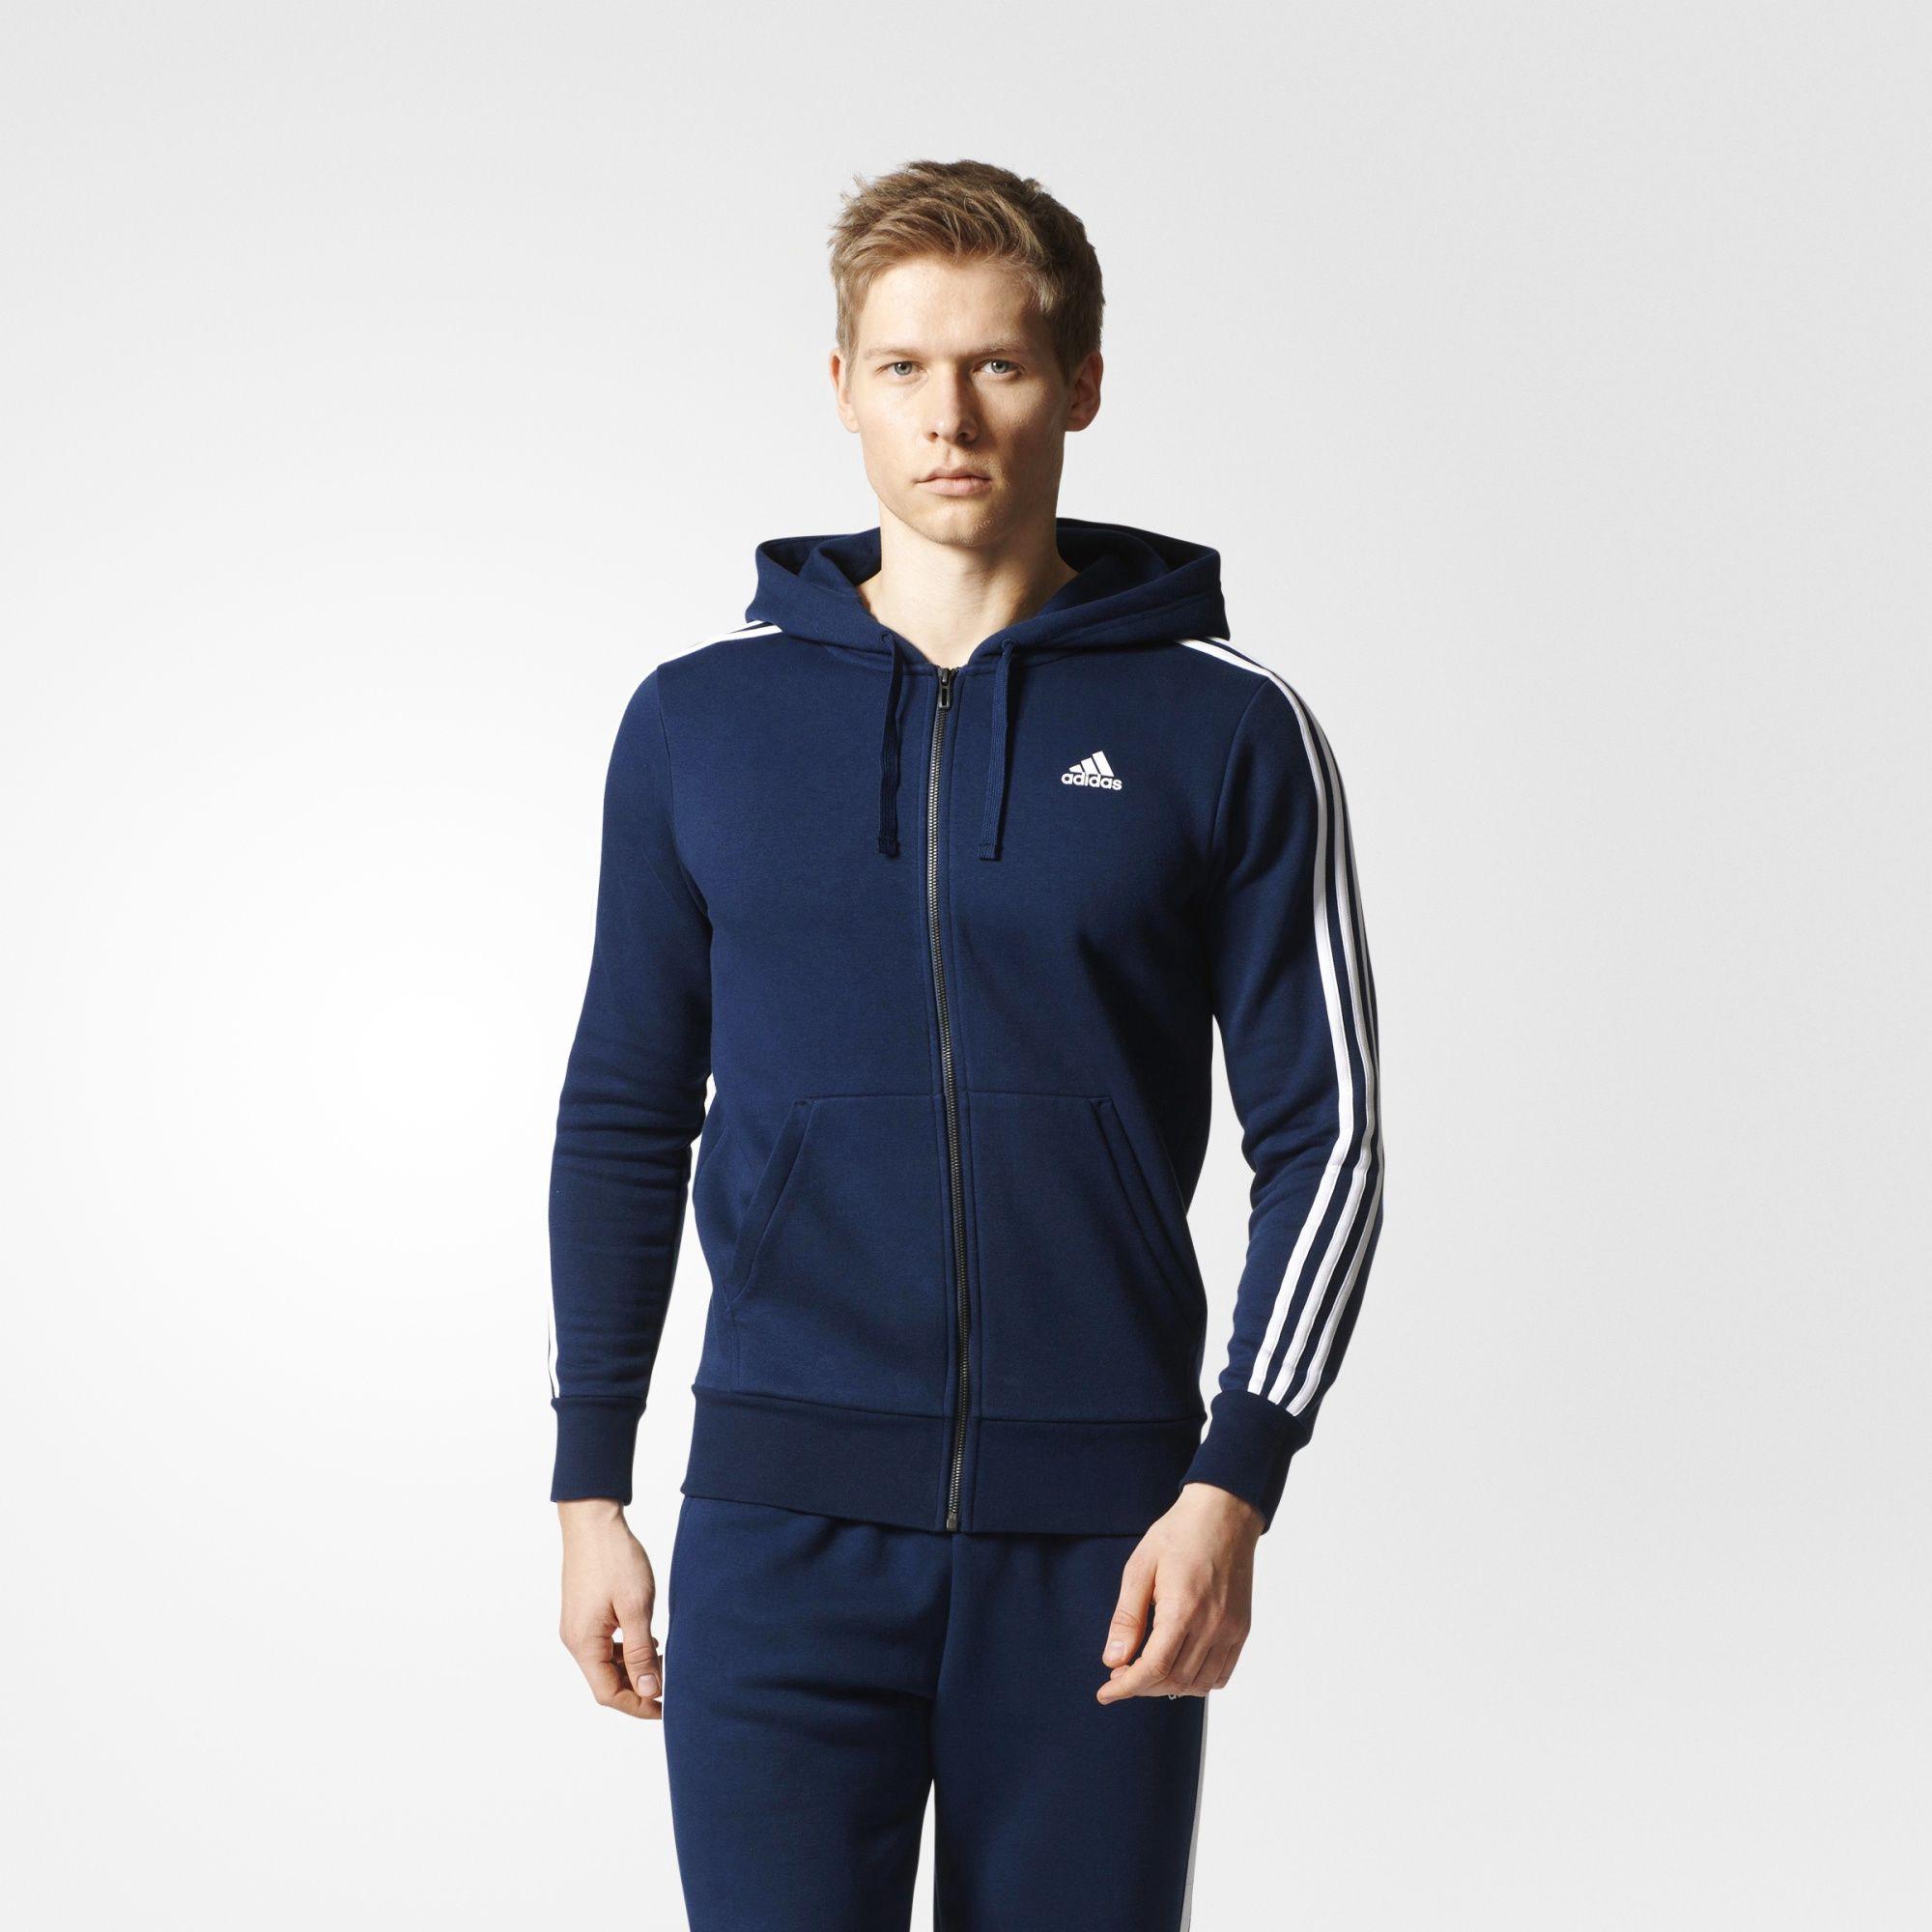 adidas navy blue hoodie